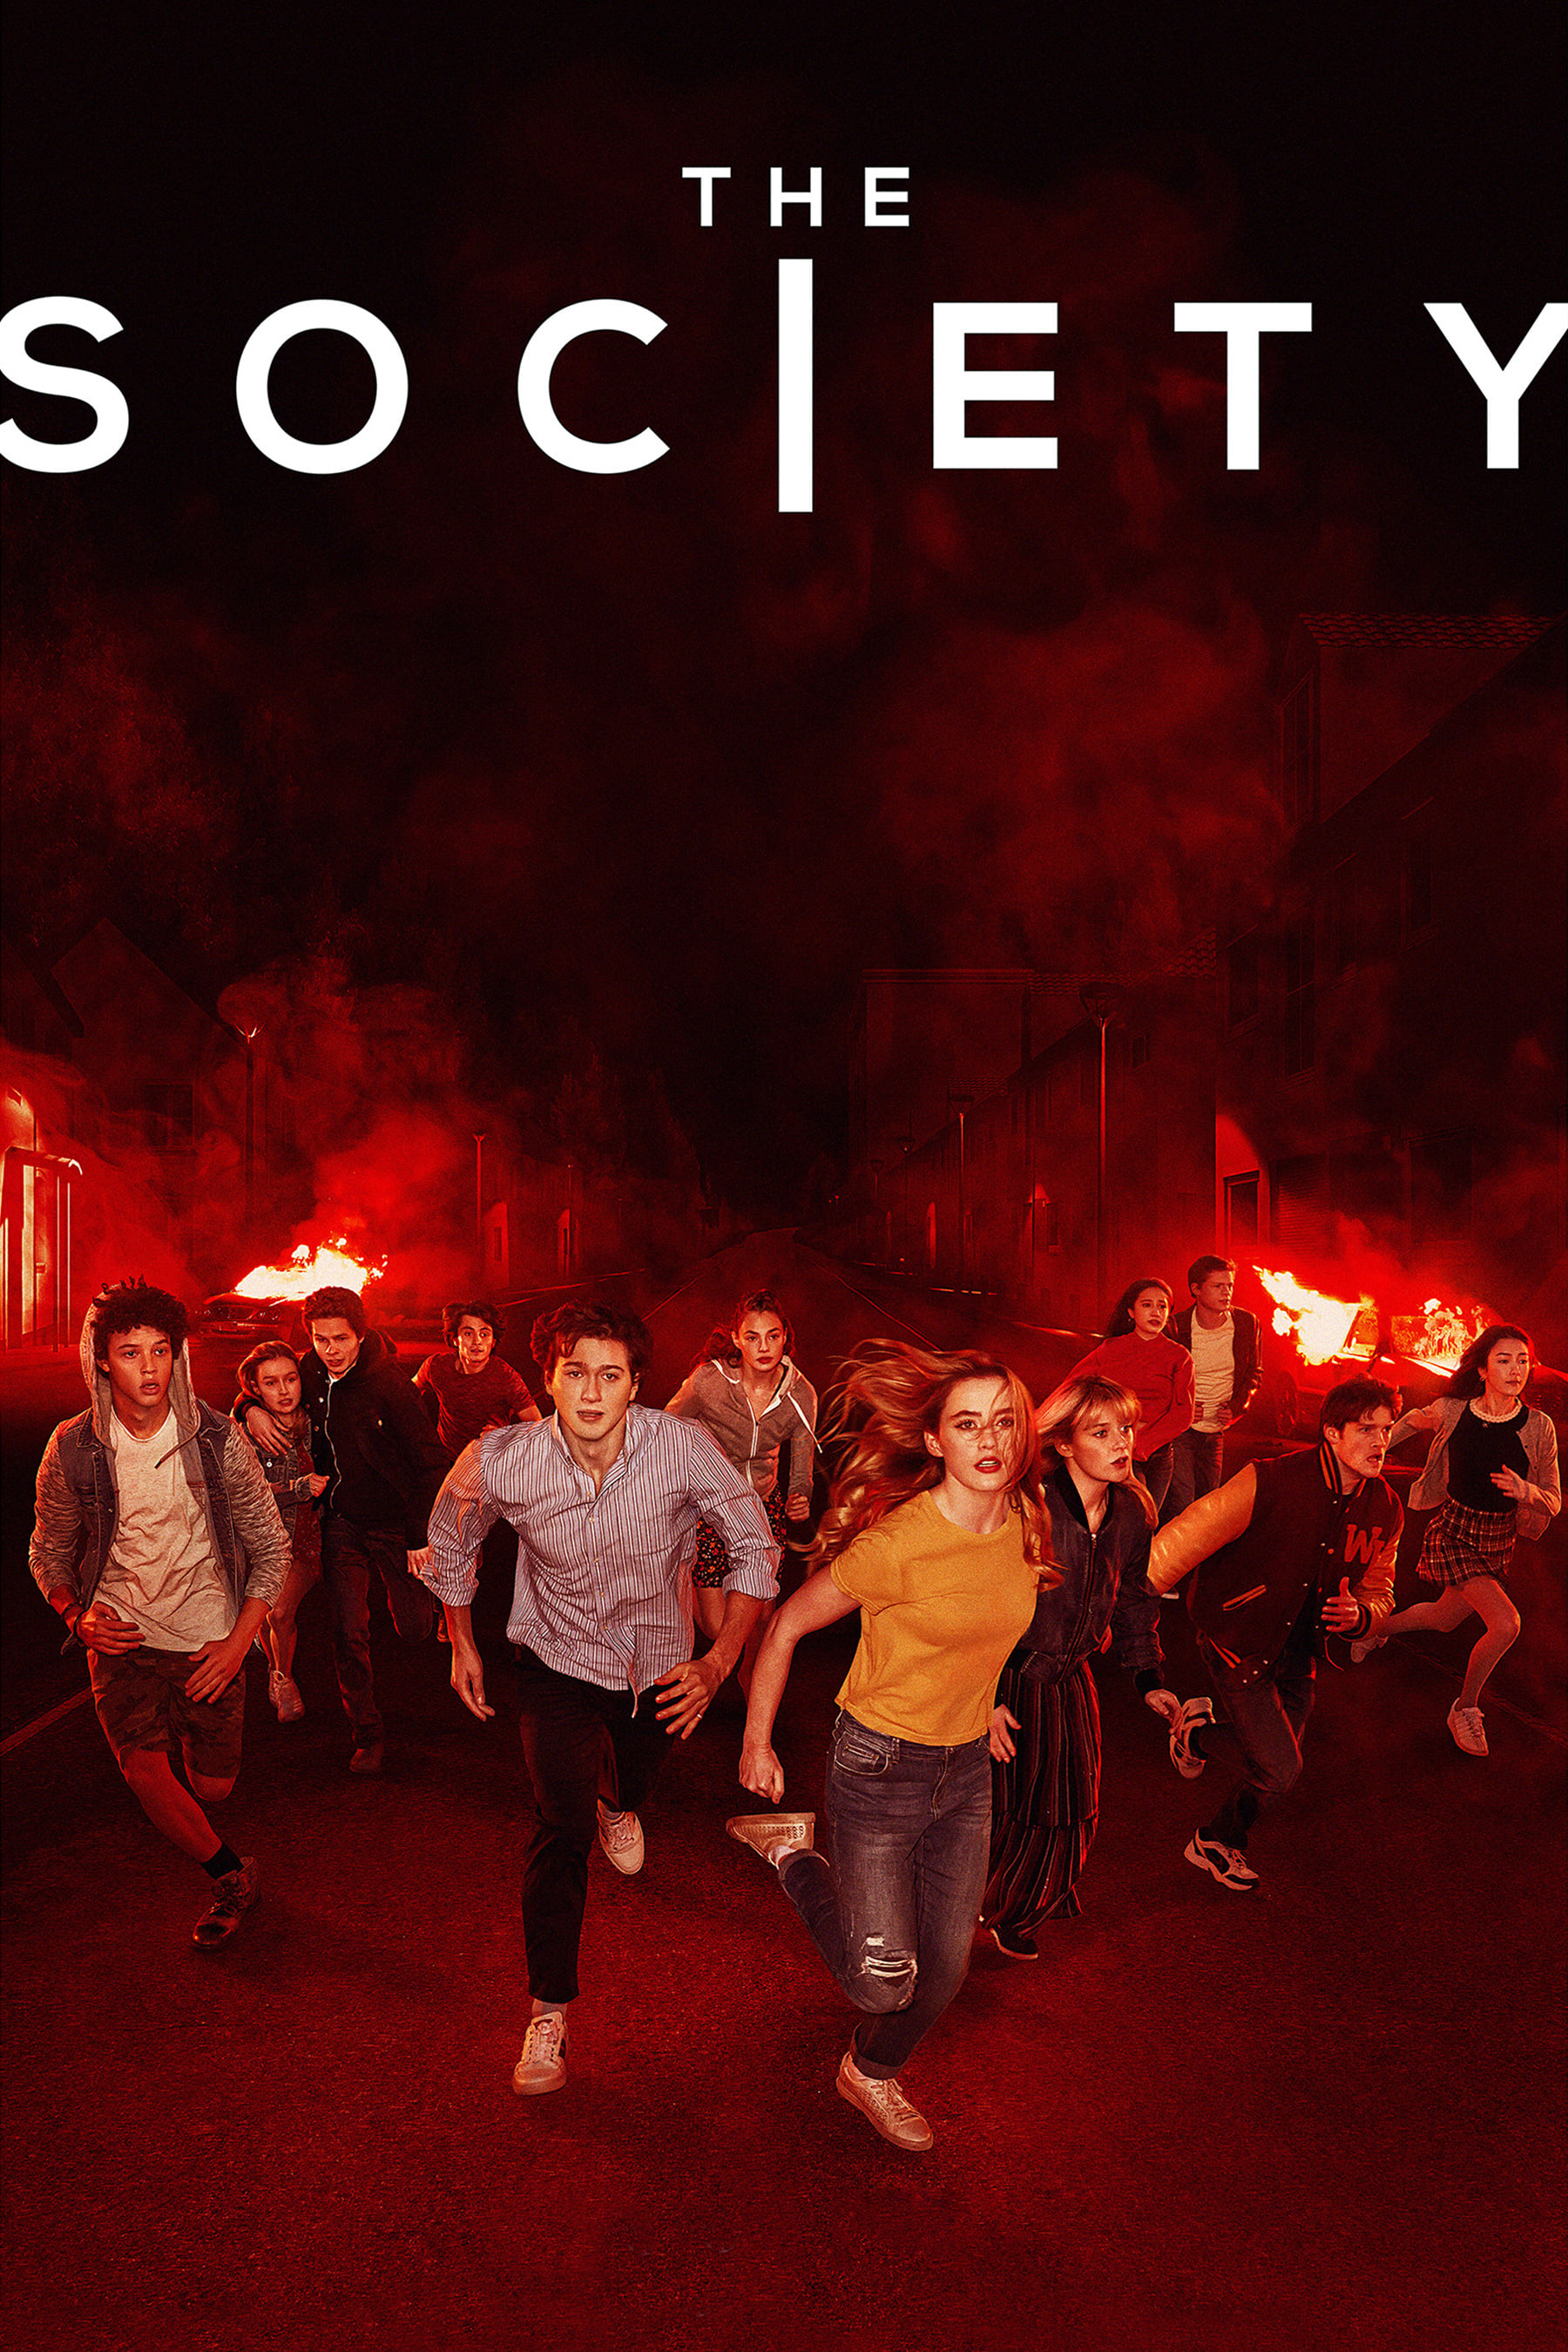 The Society (2019)